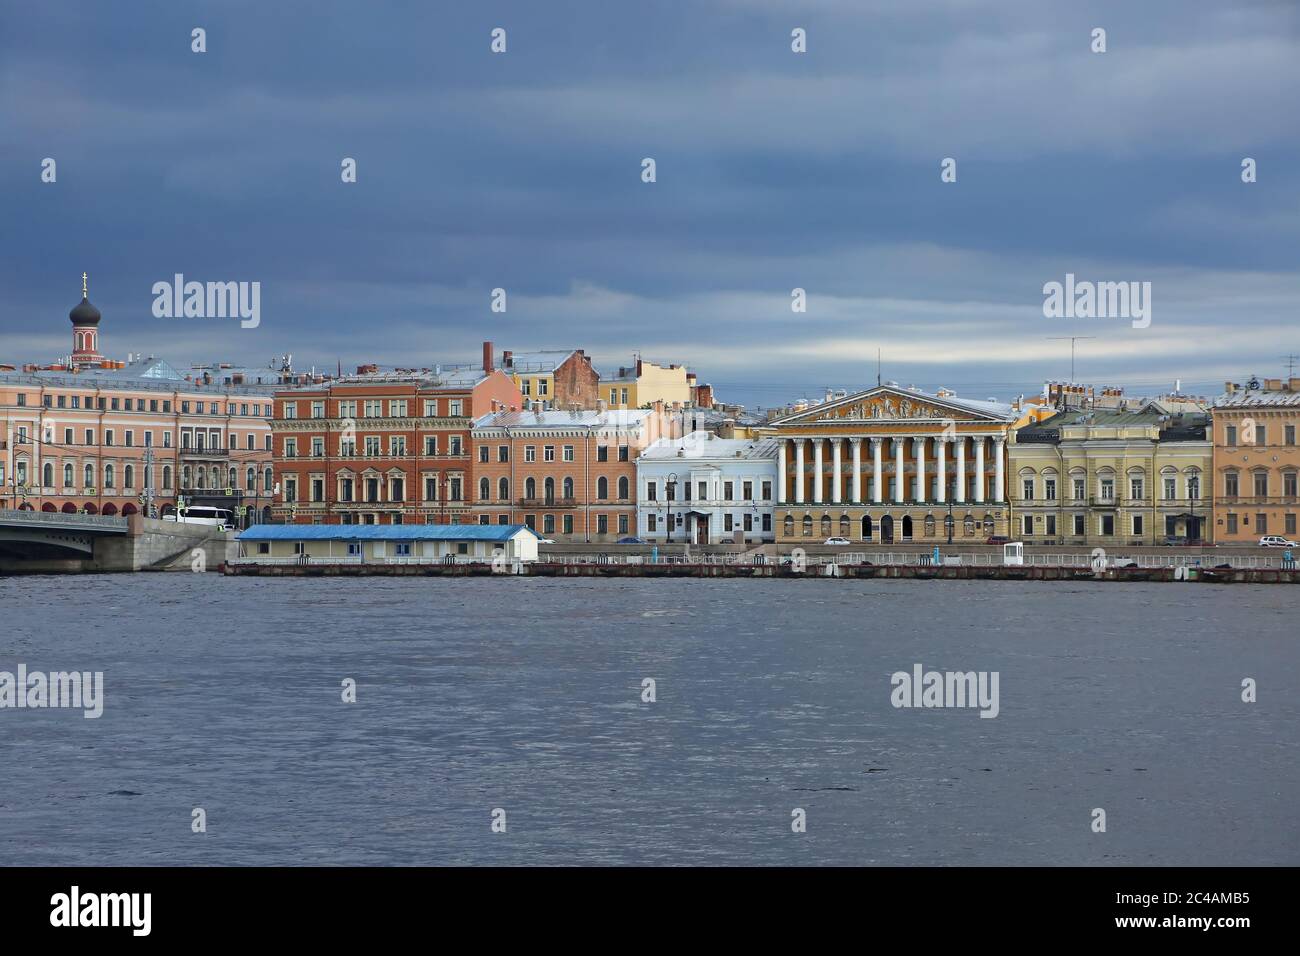 Ammira il fiume Neva, uno dei principali corsi d'acqua della città, e gli edifici storici e colourful dall'altro lato, San Pietroburgo, Russia. Foto Stock